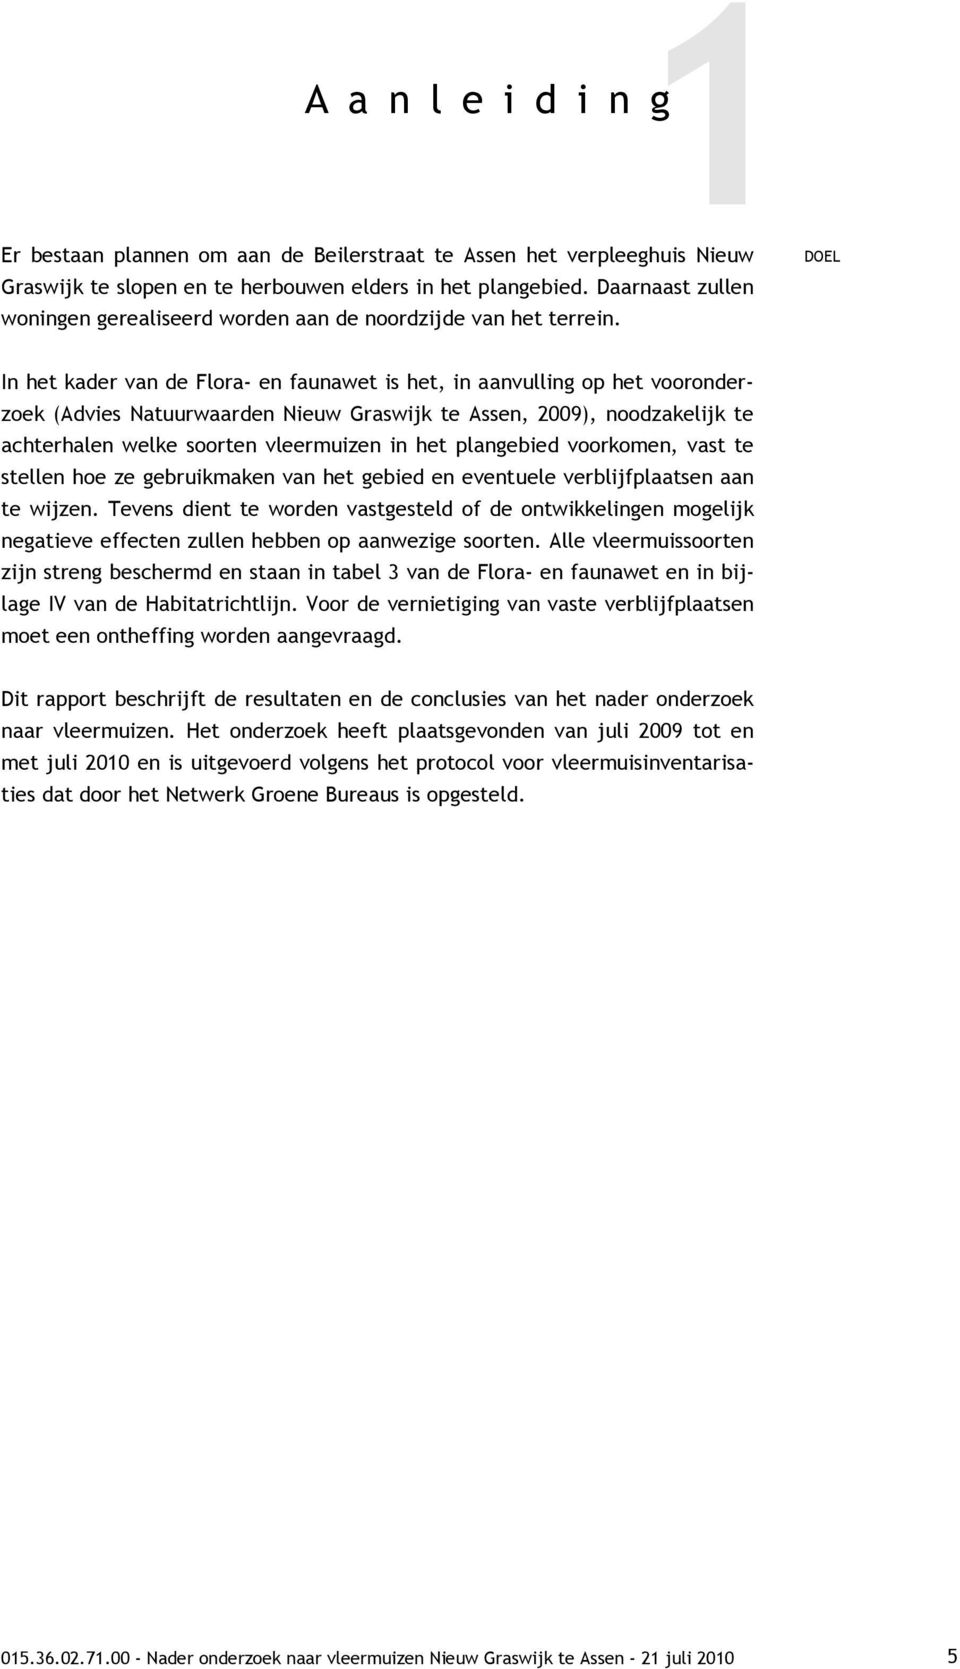 DOEL In het kader van de Flora- en faunawet is het, in aanvulling op het vooronderzoek (Advies Natuurwaarden Nieuw Graswijk te Assen, 2009), noodzakelijk te achterhalen welke soorten vleermuizen in